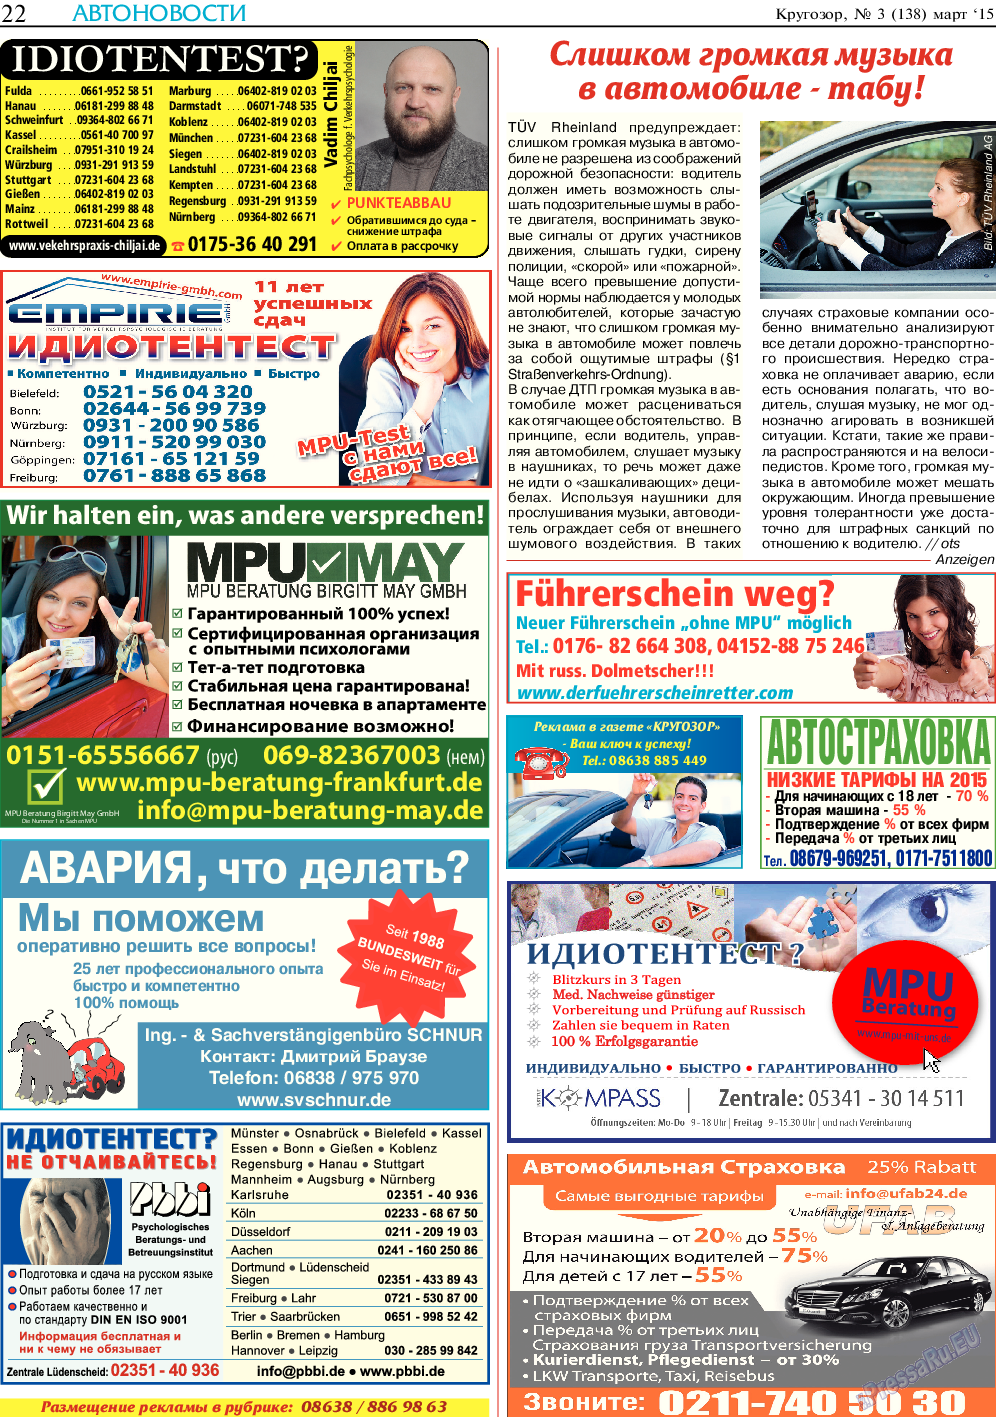 Кругозор, газета. 2015 №3 стр.22